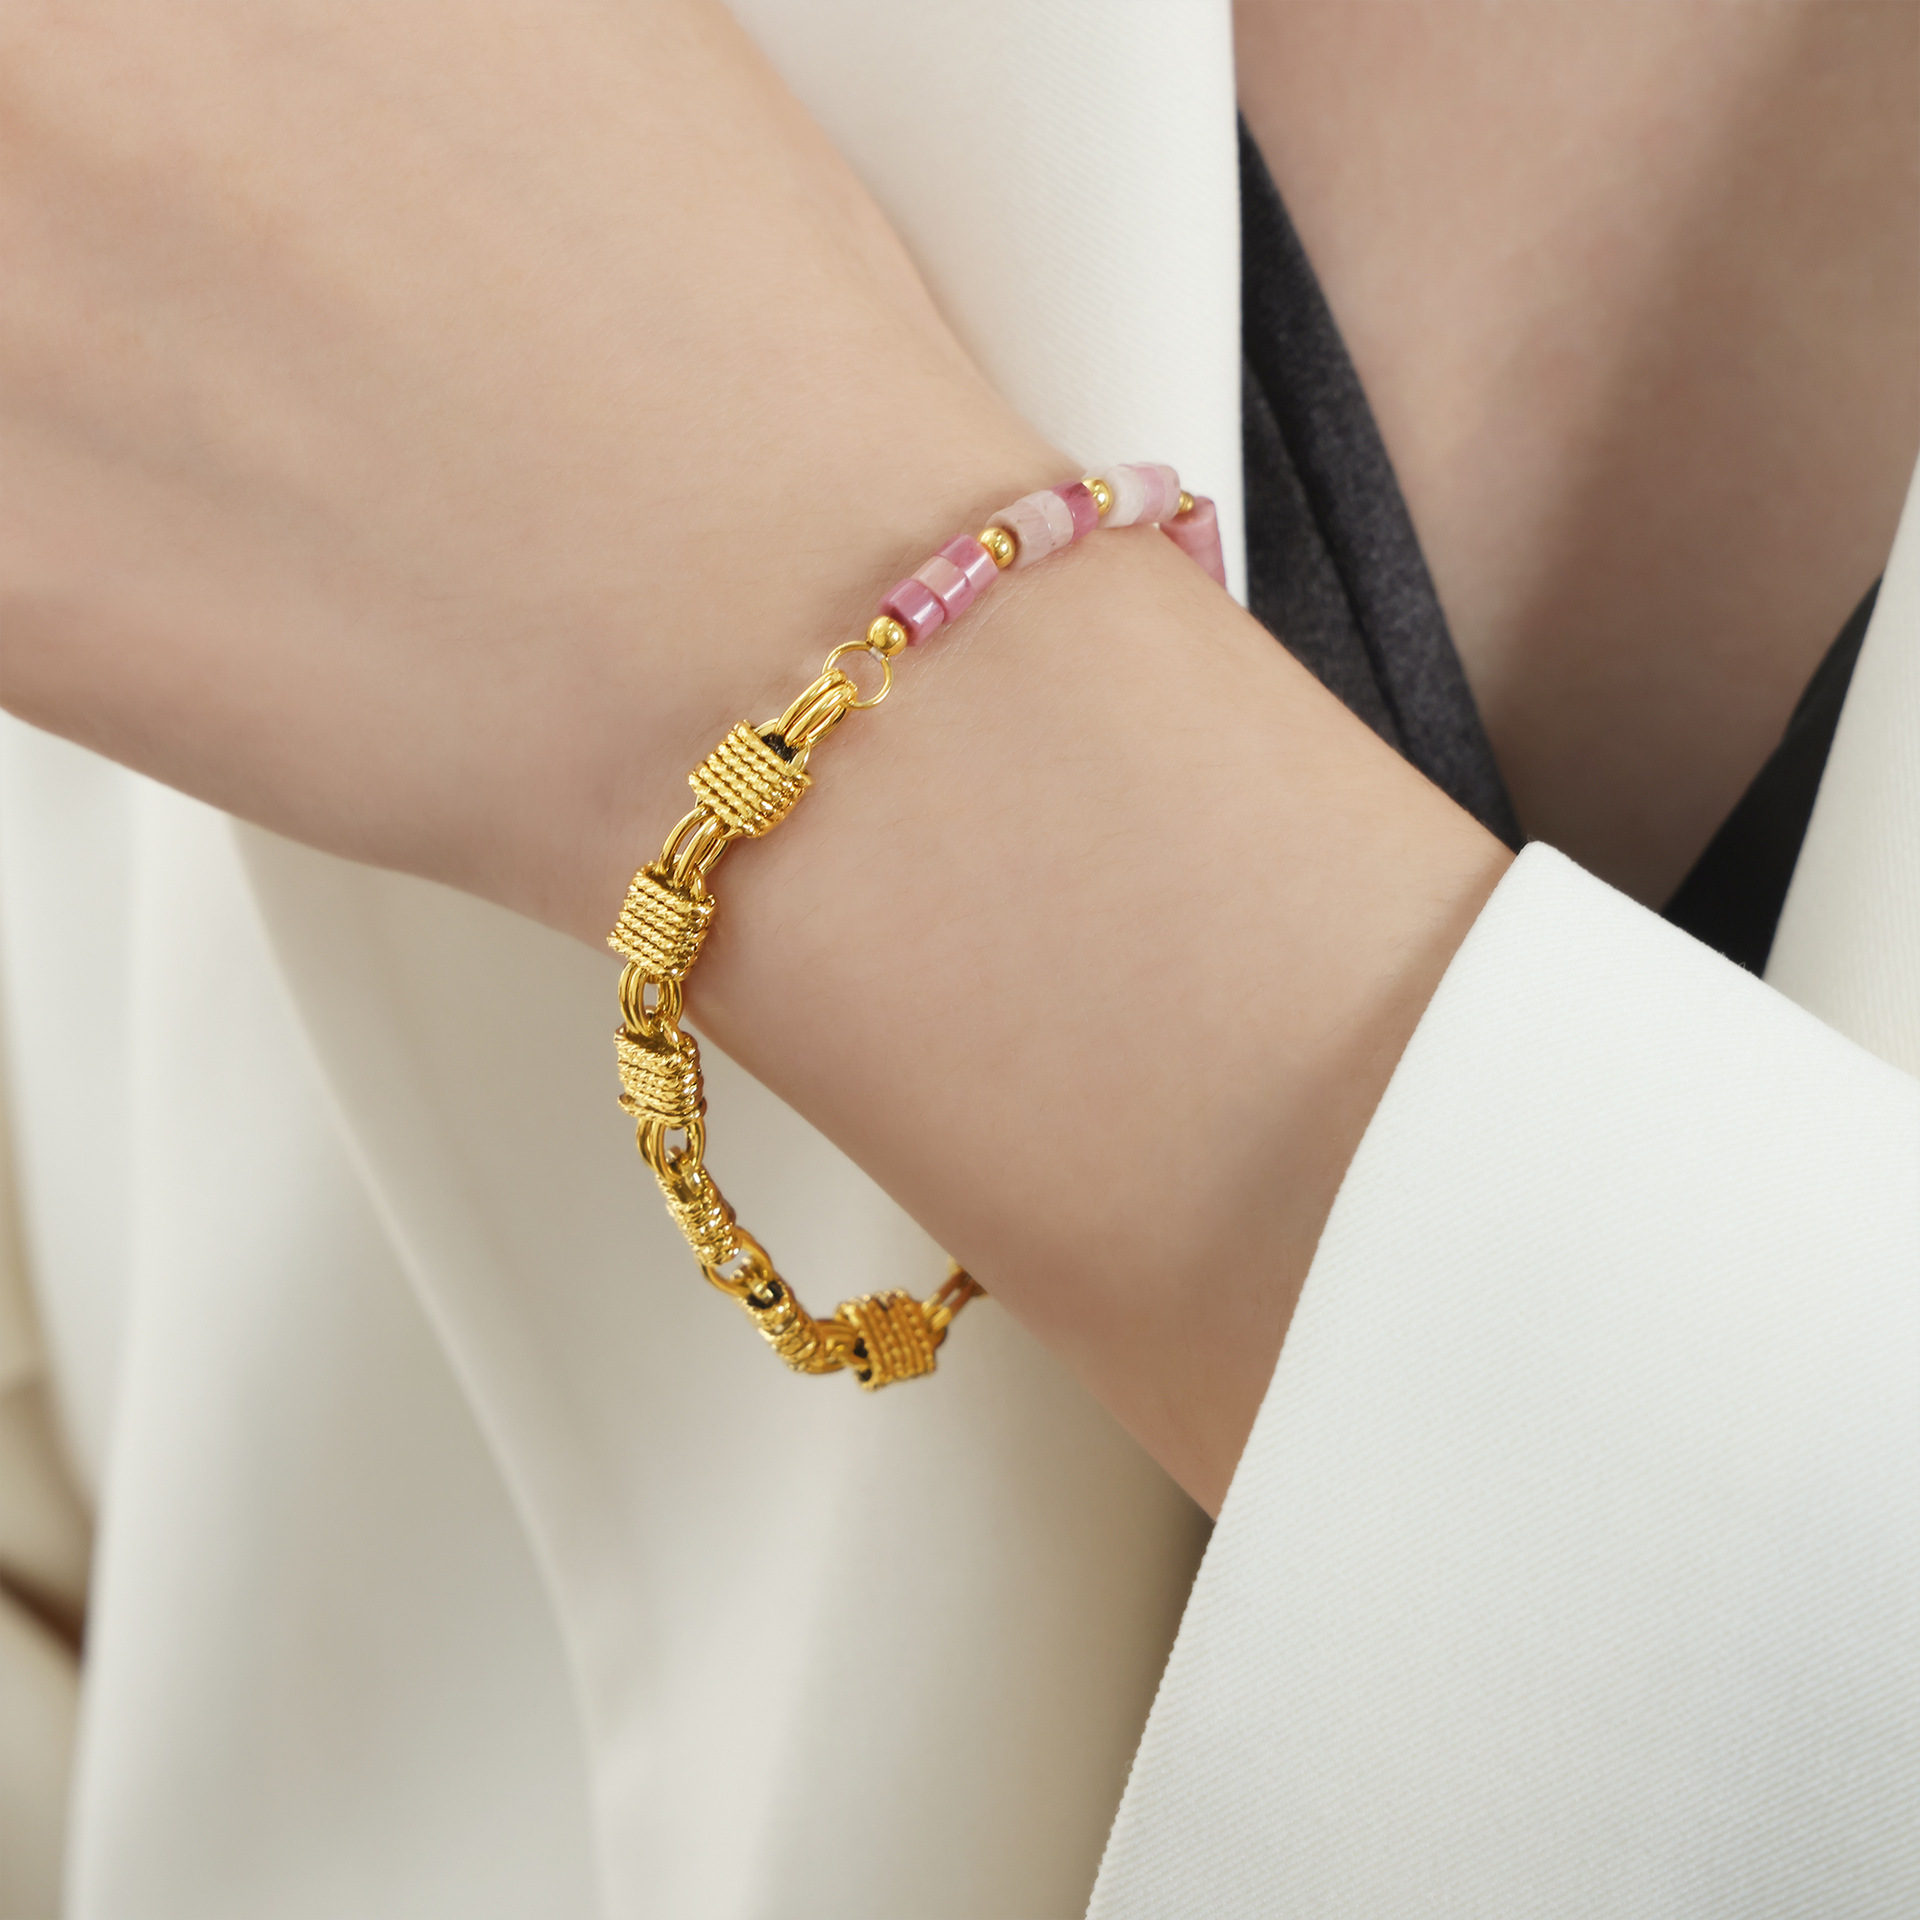 Pink natural stone bracelet - 18cm